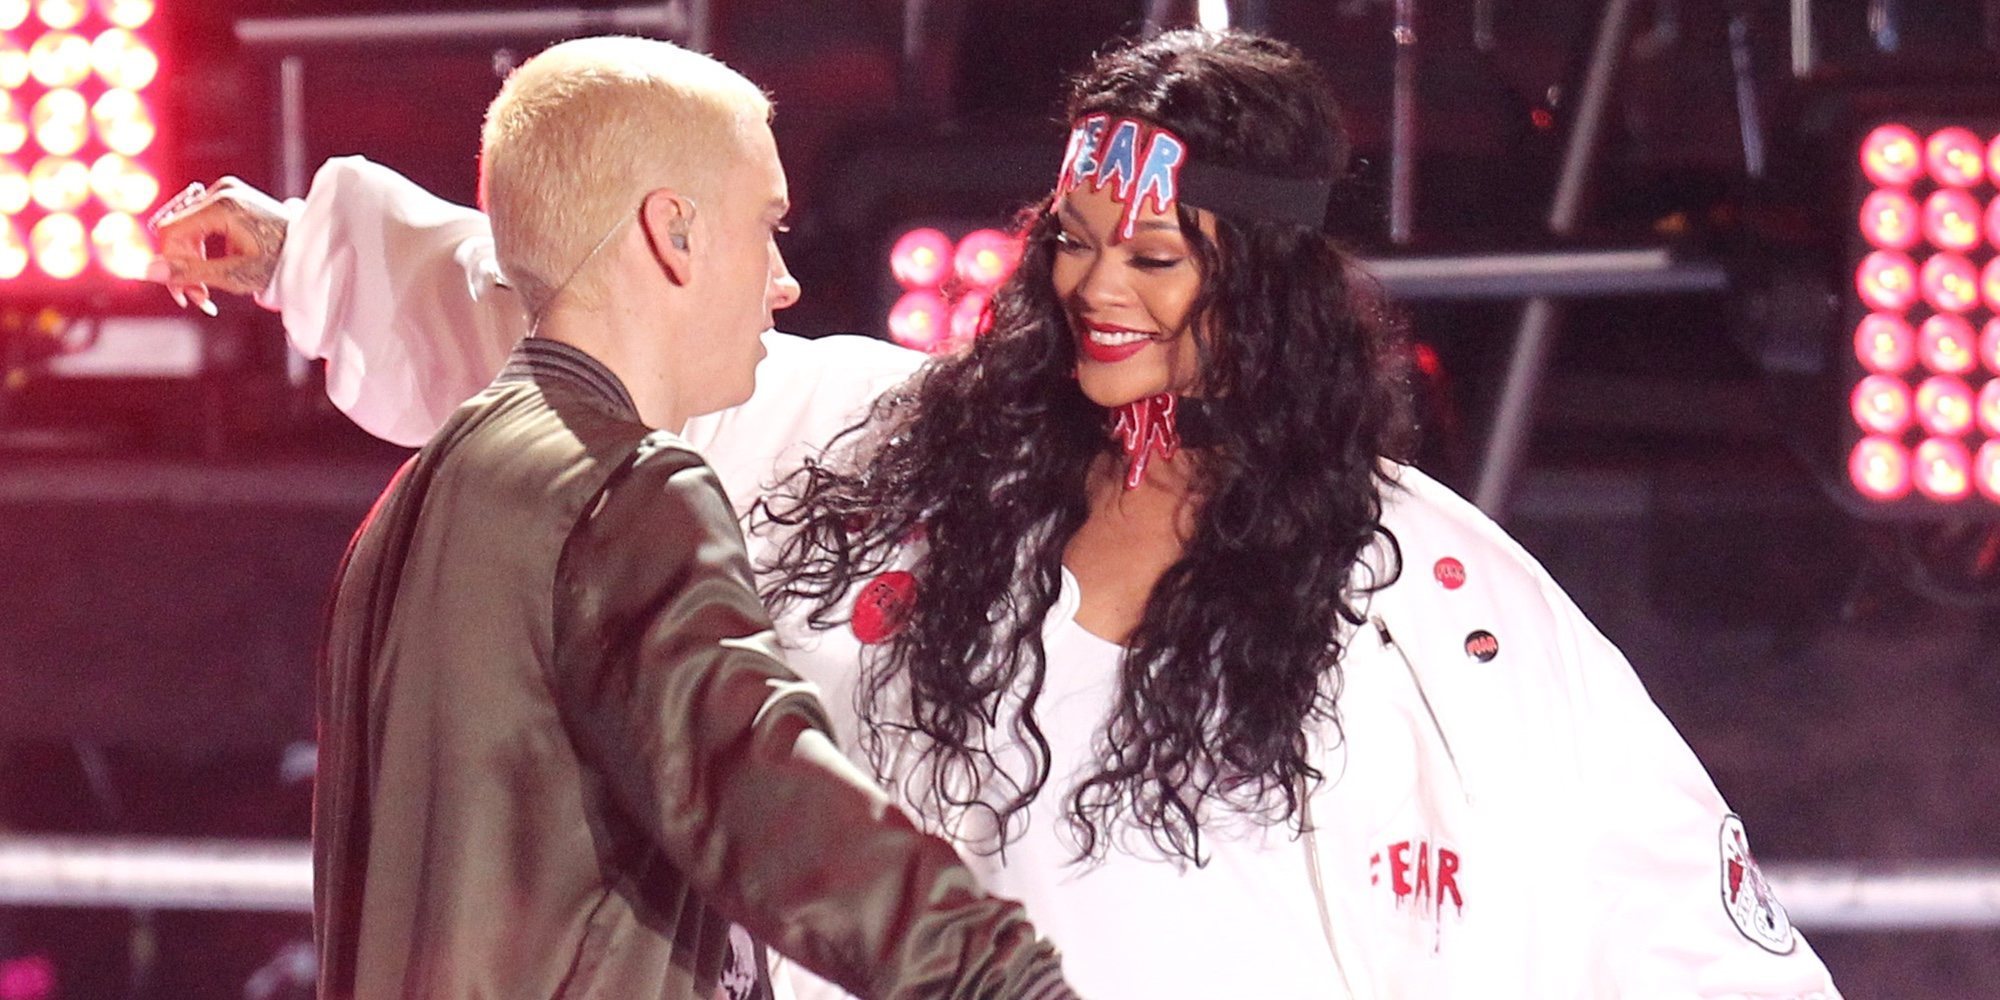 Sale a la luz la canción de Eminem en la que defendía a Chris Brown por maltratar a Rihanna